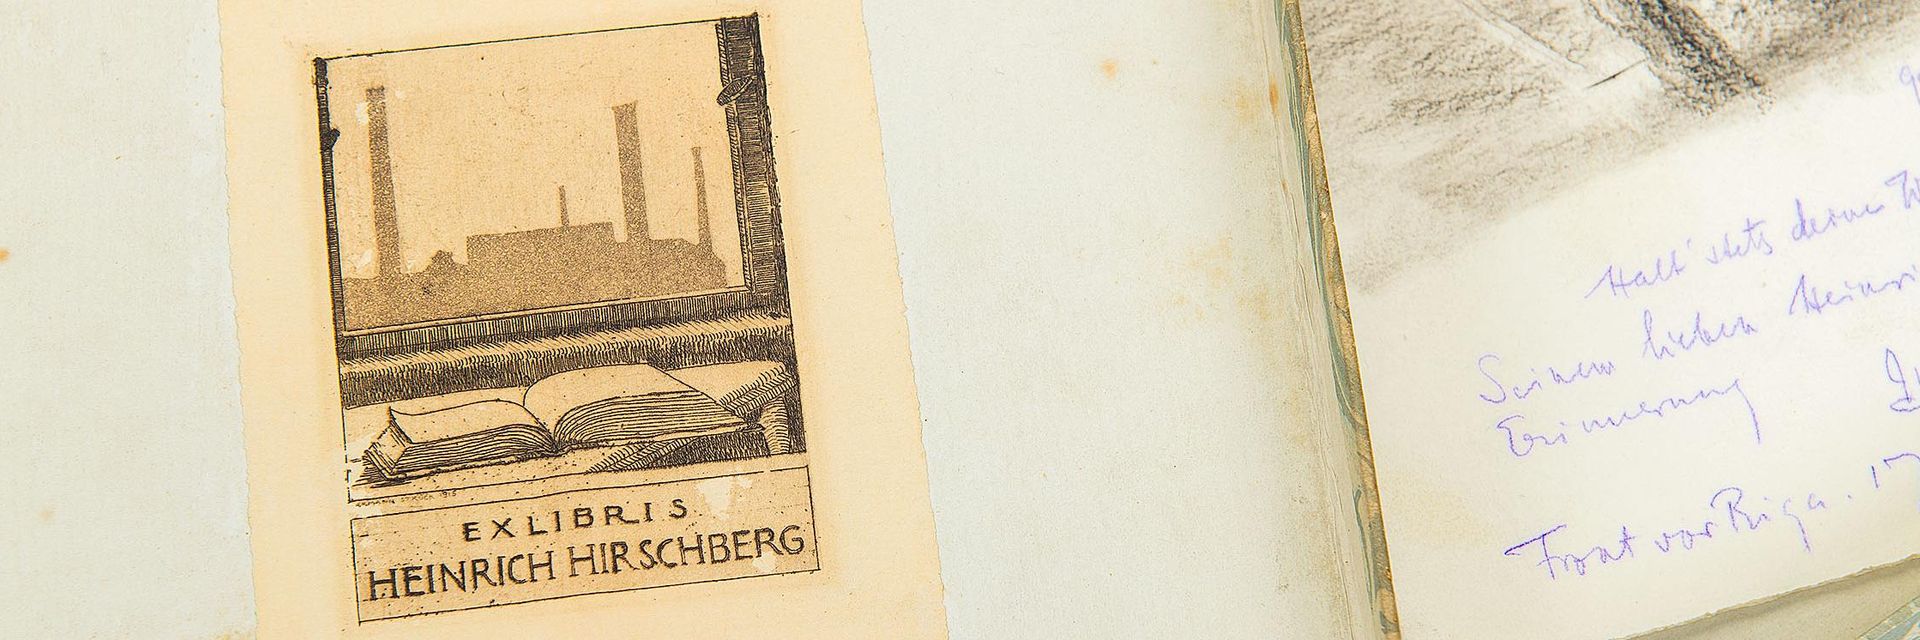 Aufgeklappte Schachtel, darin rechts eine Zeichnung mit einer Widmung. Links ist die Deckelinnenseite zu sehen, auf der Heinrich Hirschbergs Exlibris klebt. Es zeigt im Vordergrund ein aufgeschlagenes Buch auf einem Tisch, im Hintergrund ist durch einen Fensterrahmen eine Fabrik zu erkennen.